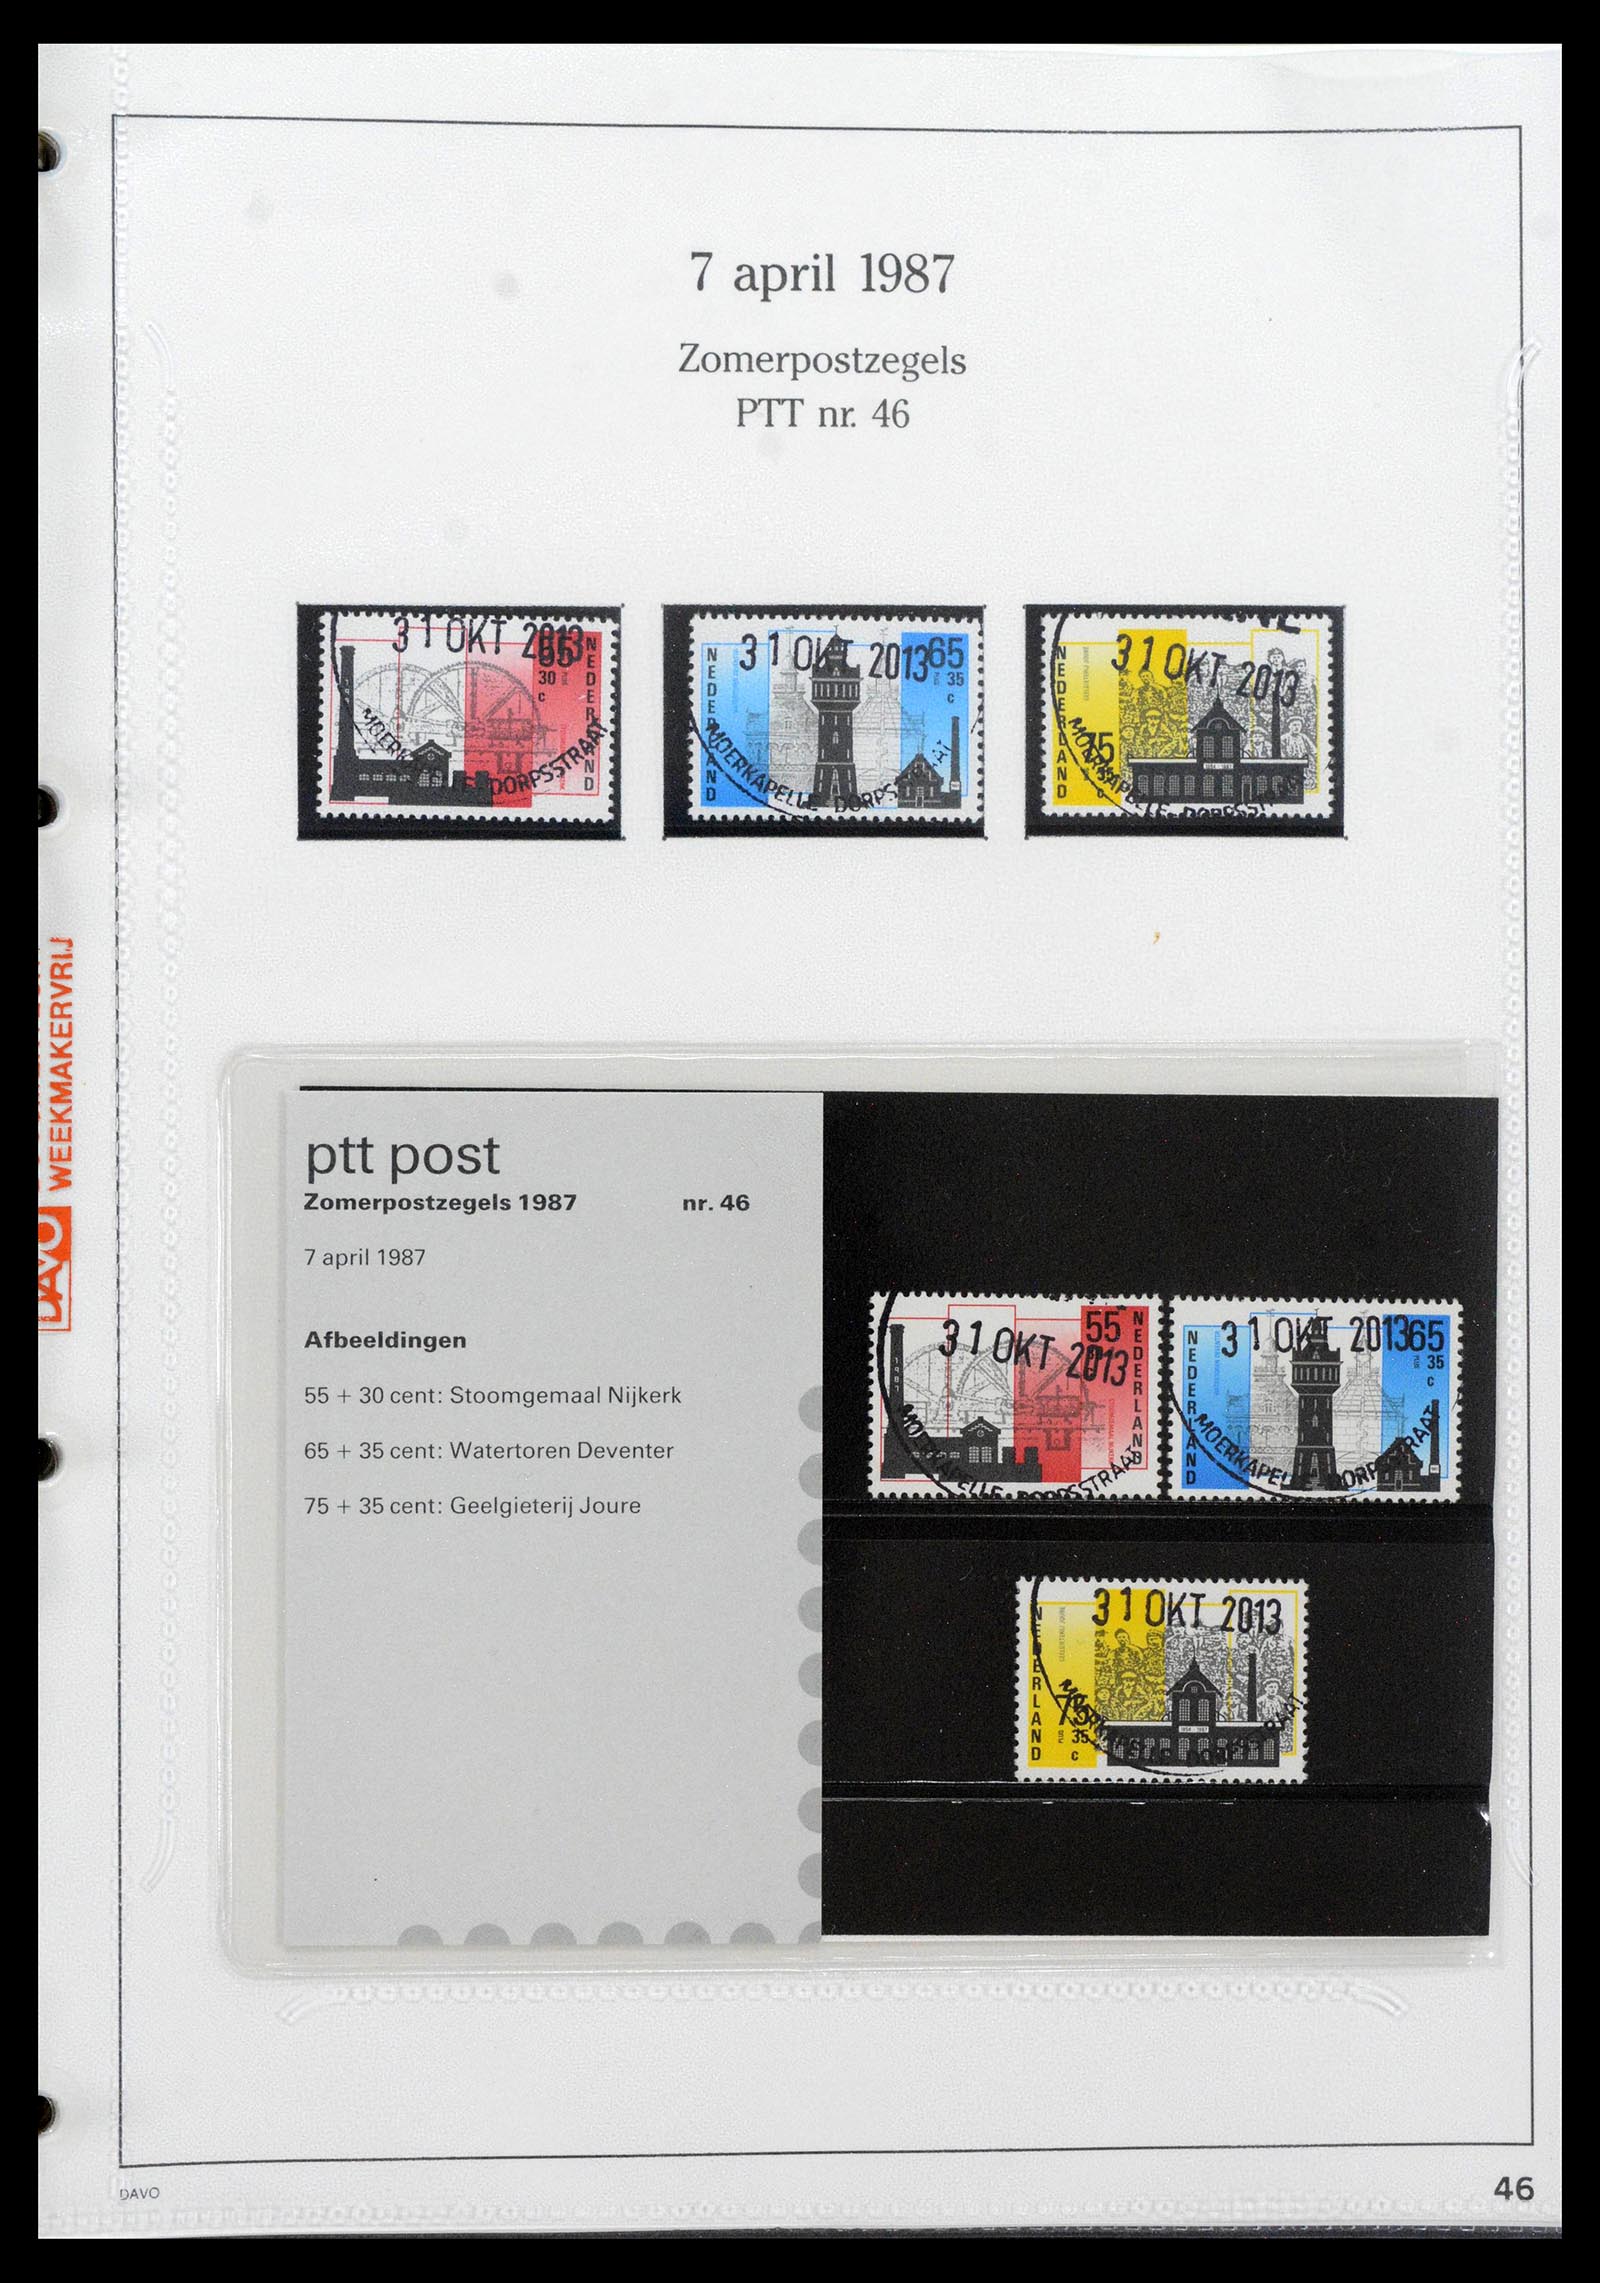 39121 0046 - Stamp collection 39121 Netherlands presentationpacks 1982-2001.